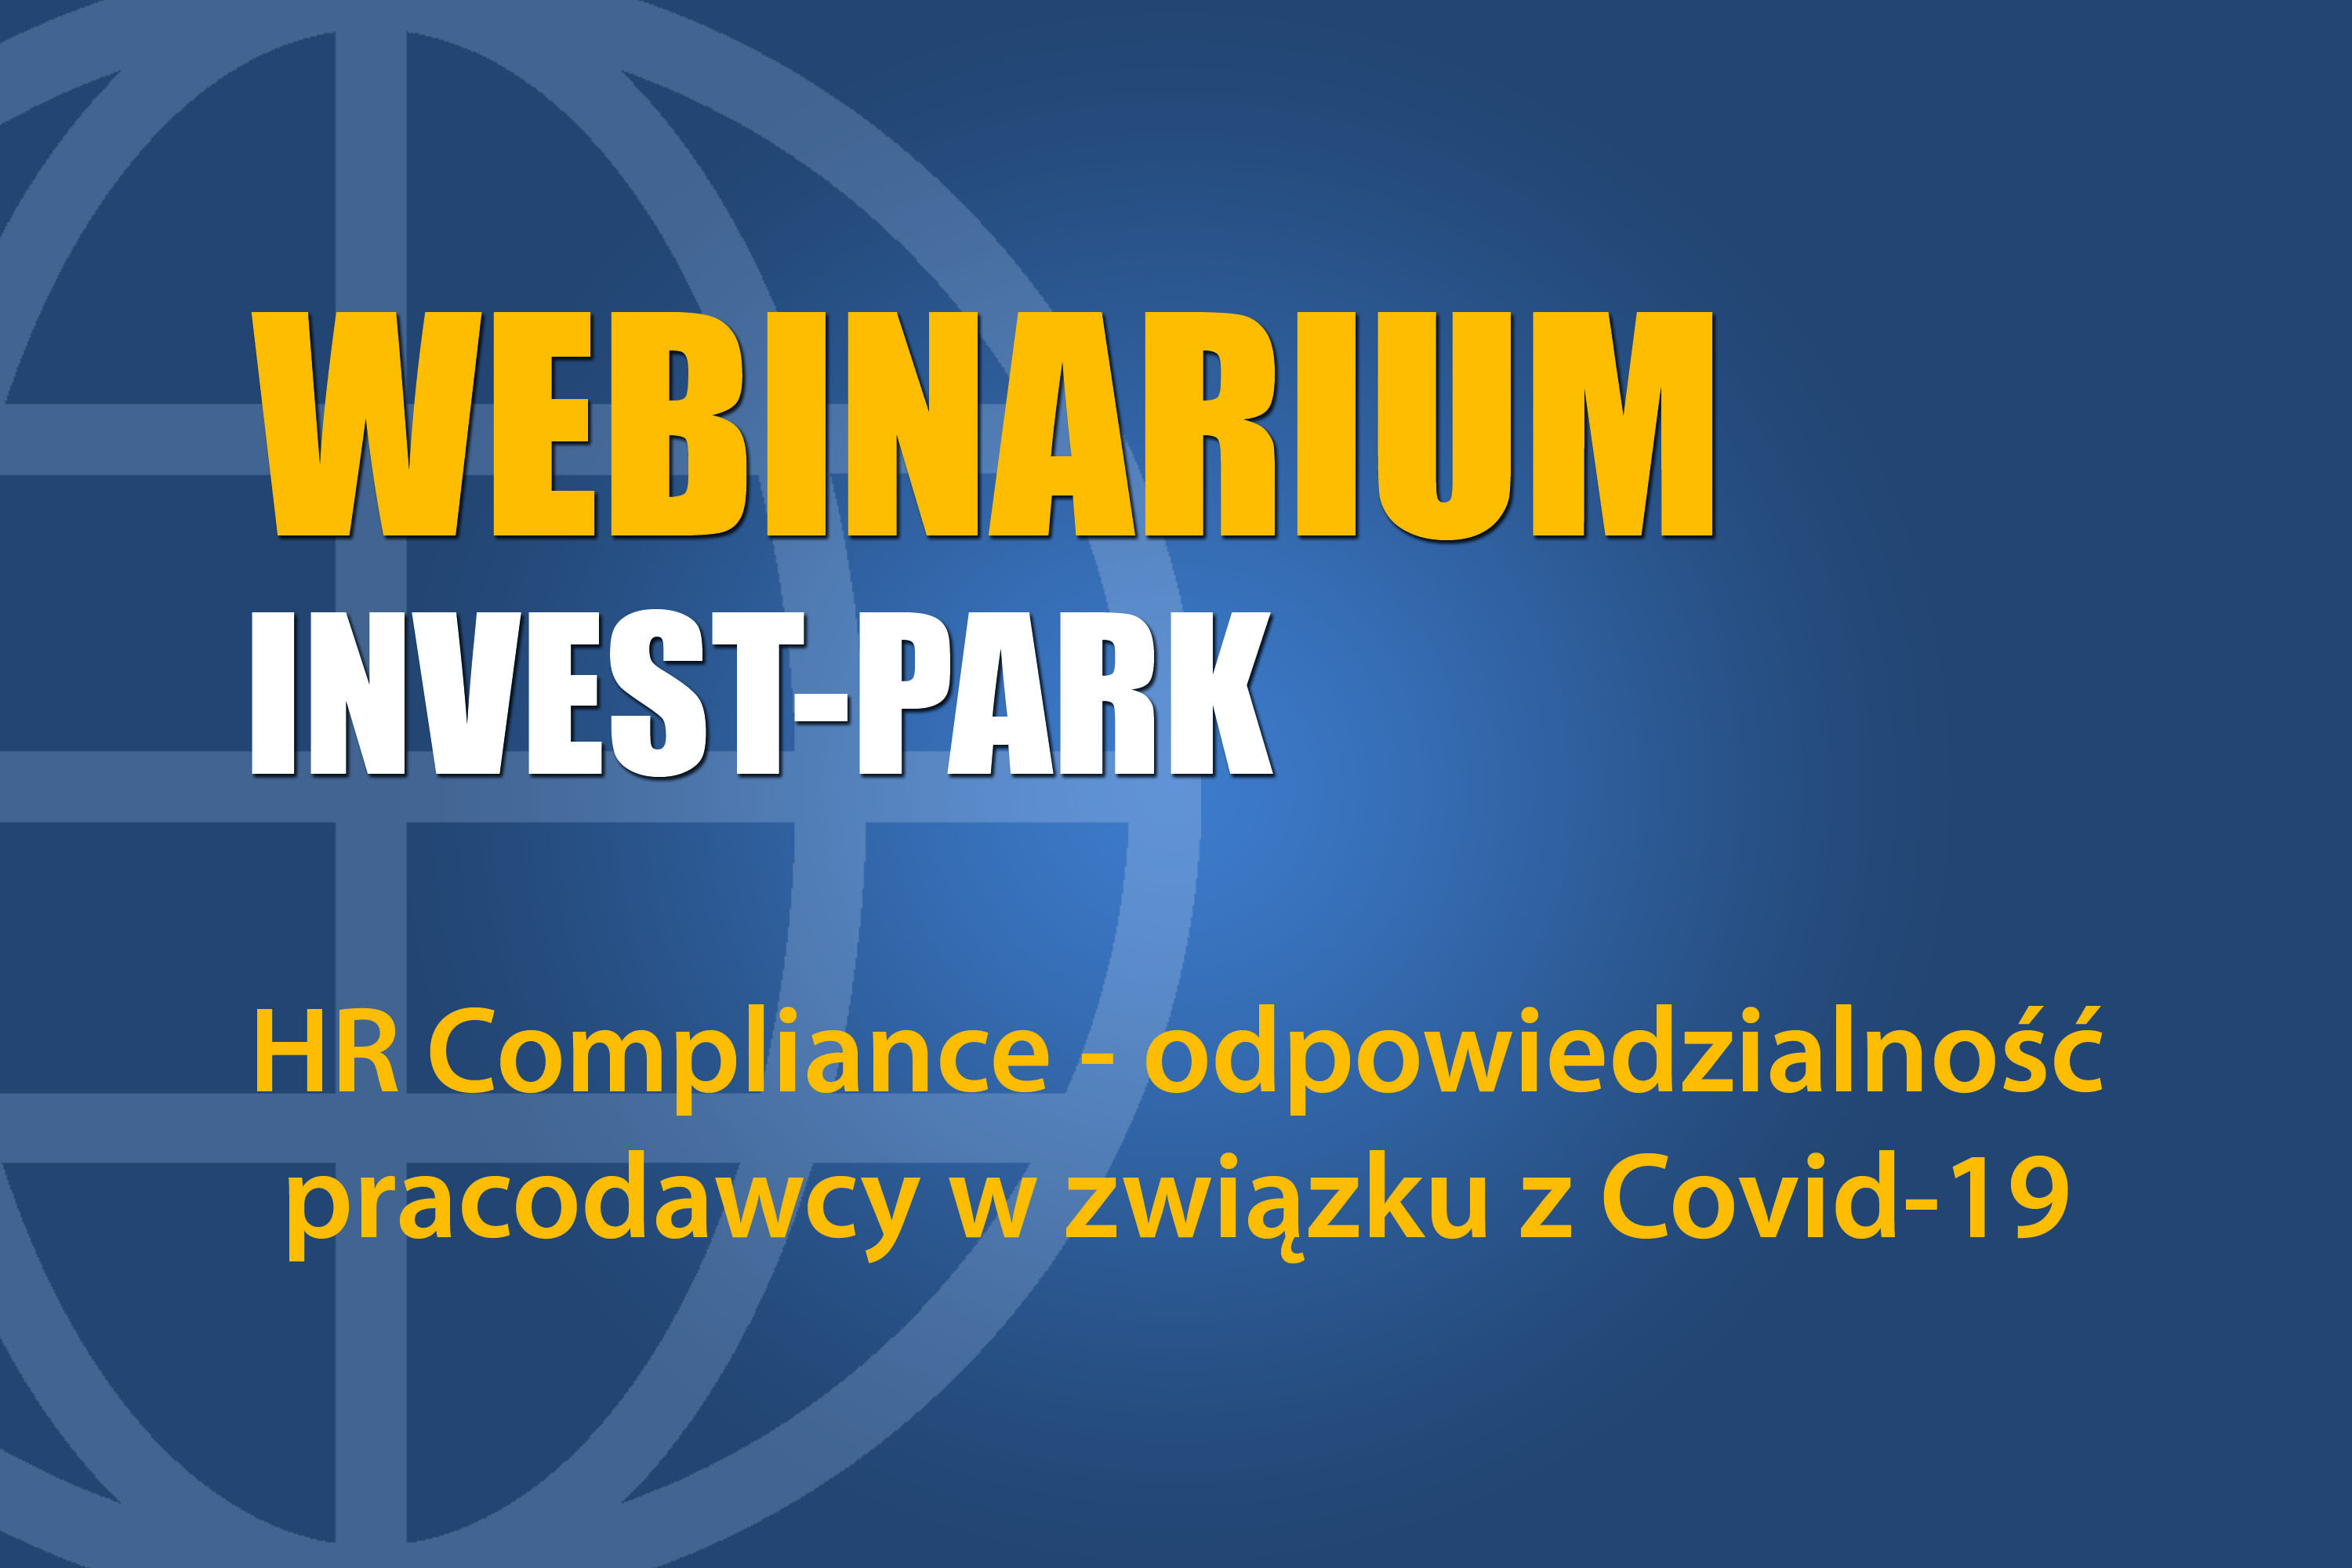 HR Compliance - odpowiedzialność pracodawcy w związku z Covid-19